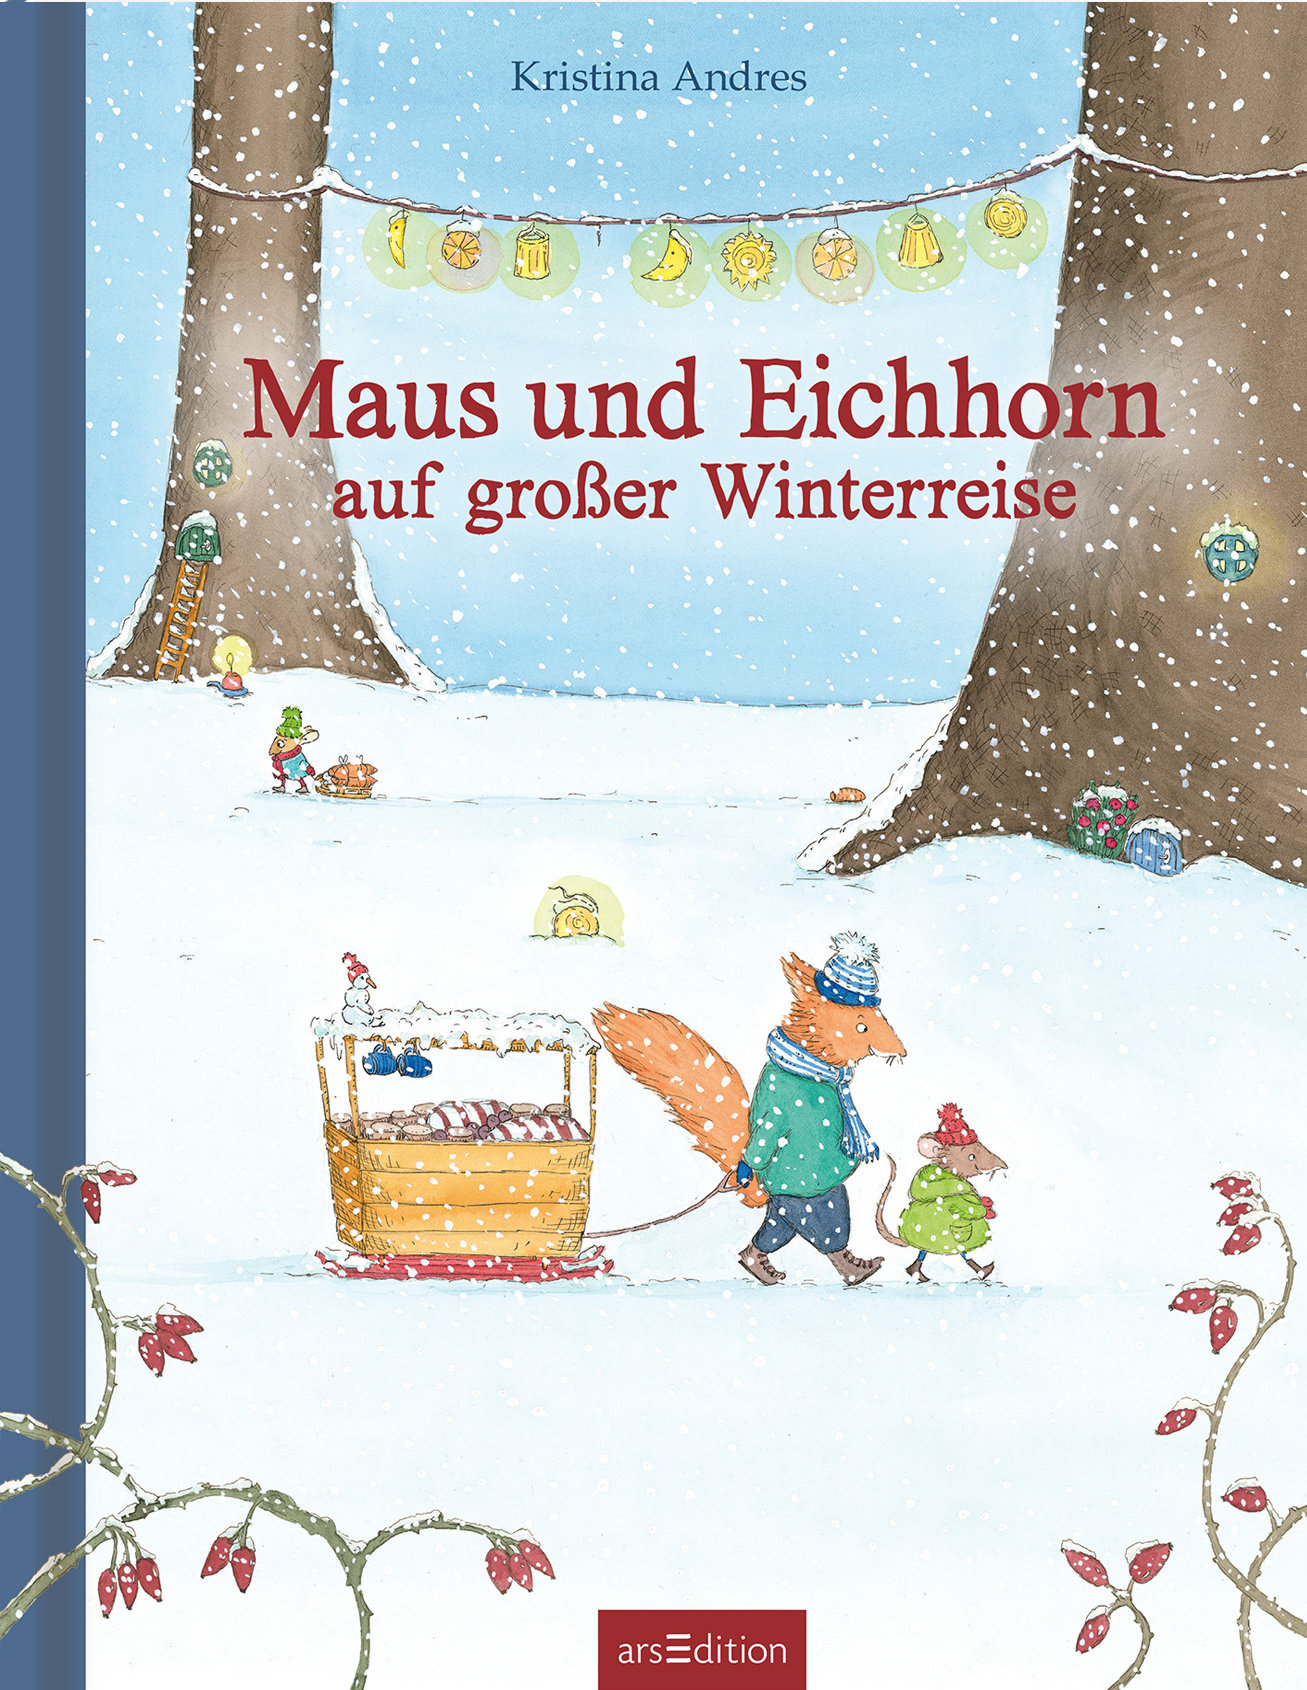 Buchcover "Maus und Eichhorn auf großer Winterreise", arsEdition